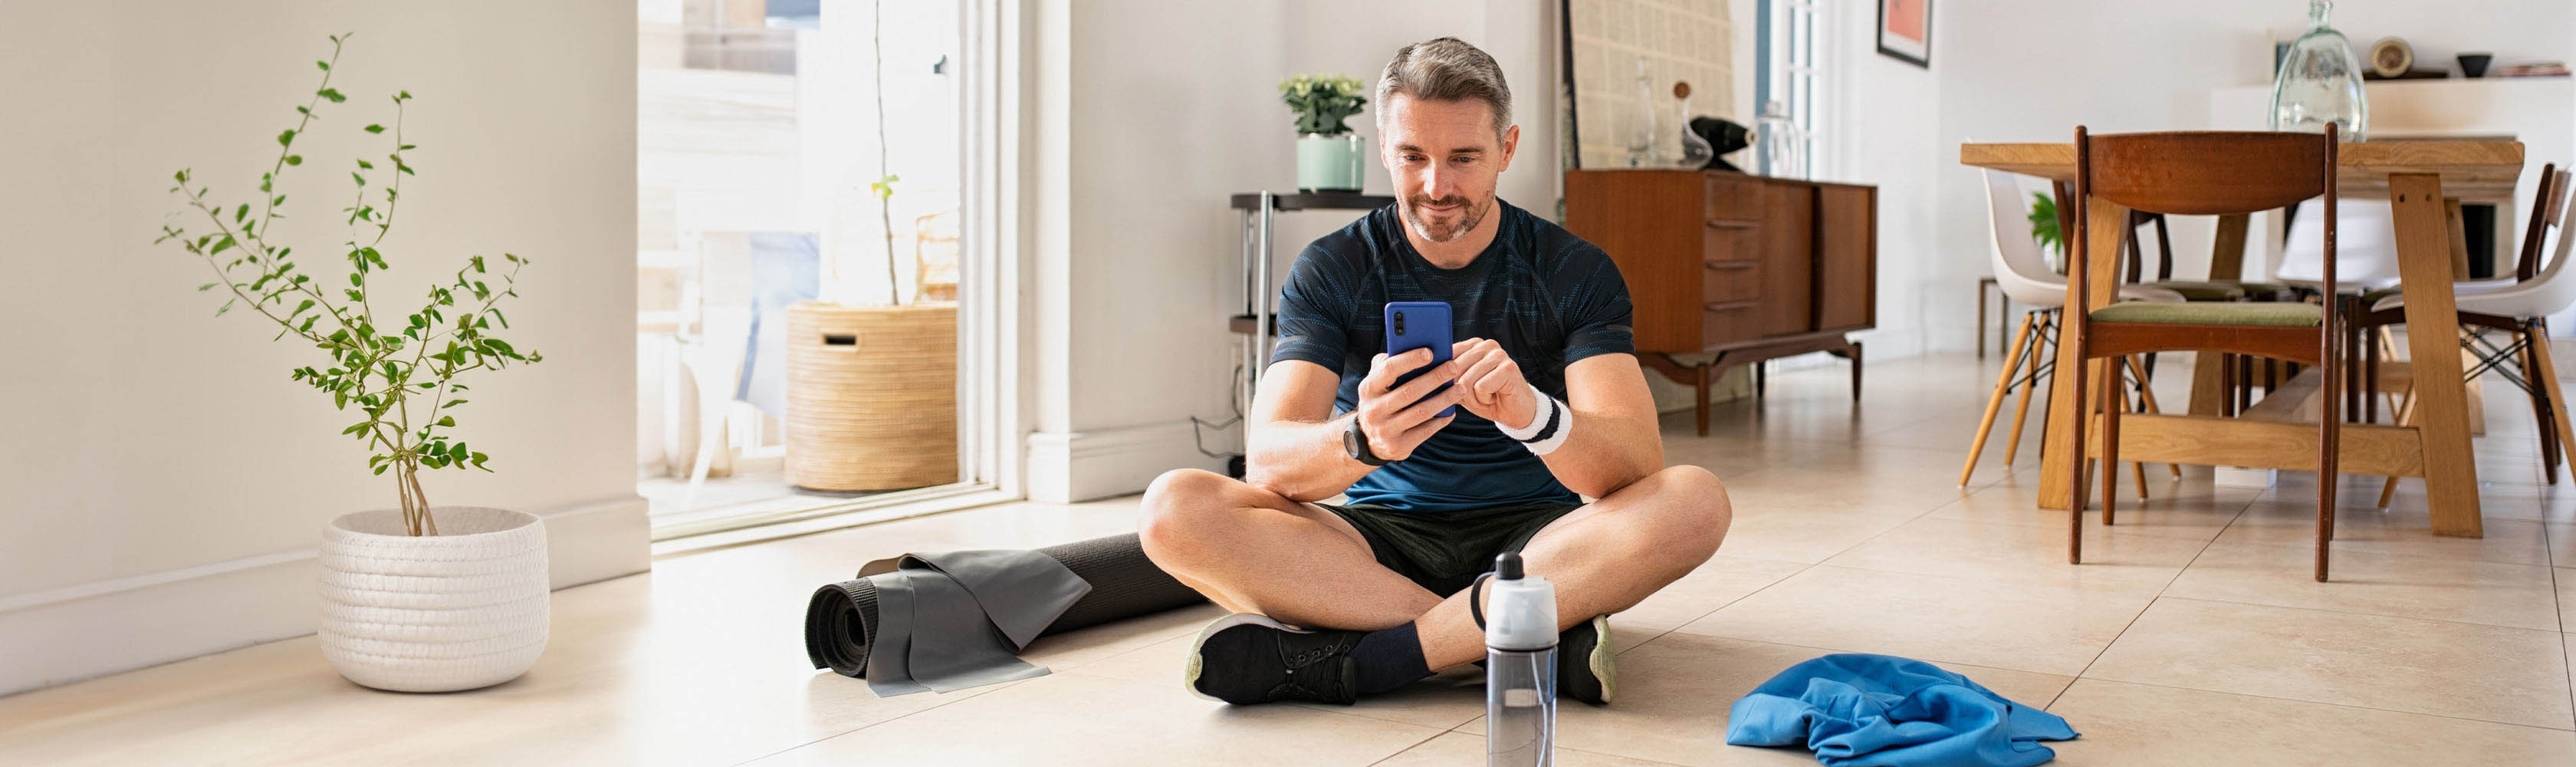 Un homme sportif est assis par terre et utilise une application sur son smartphone.